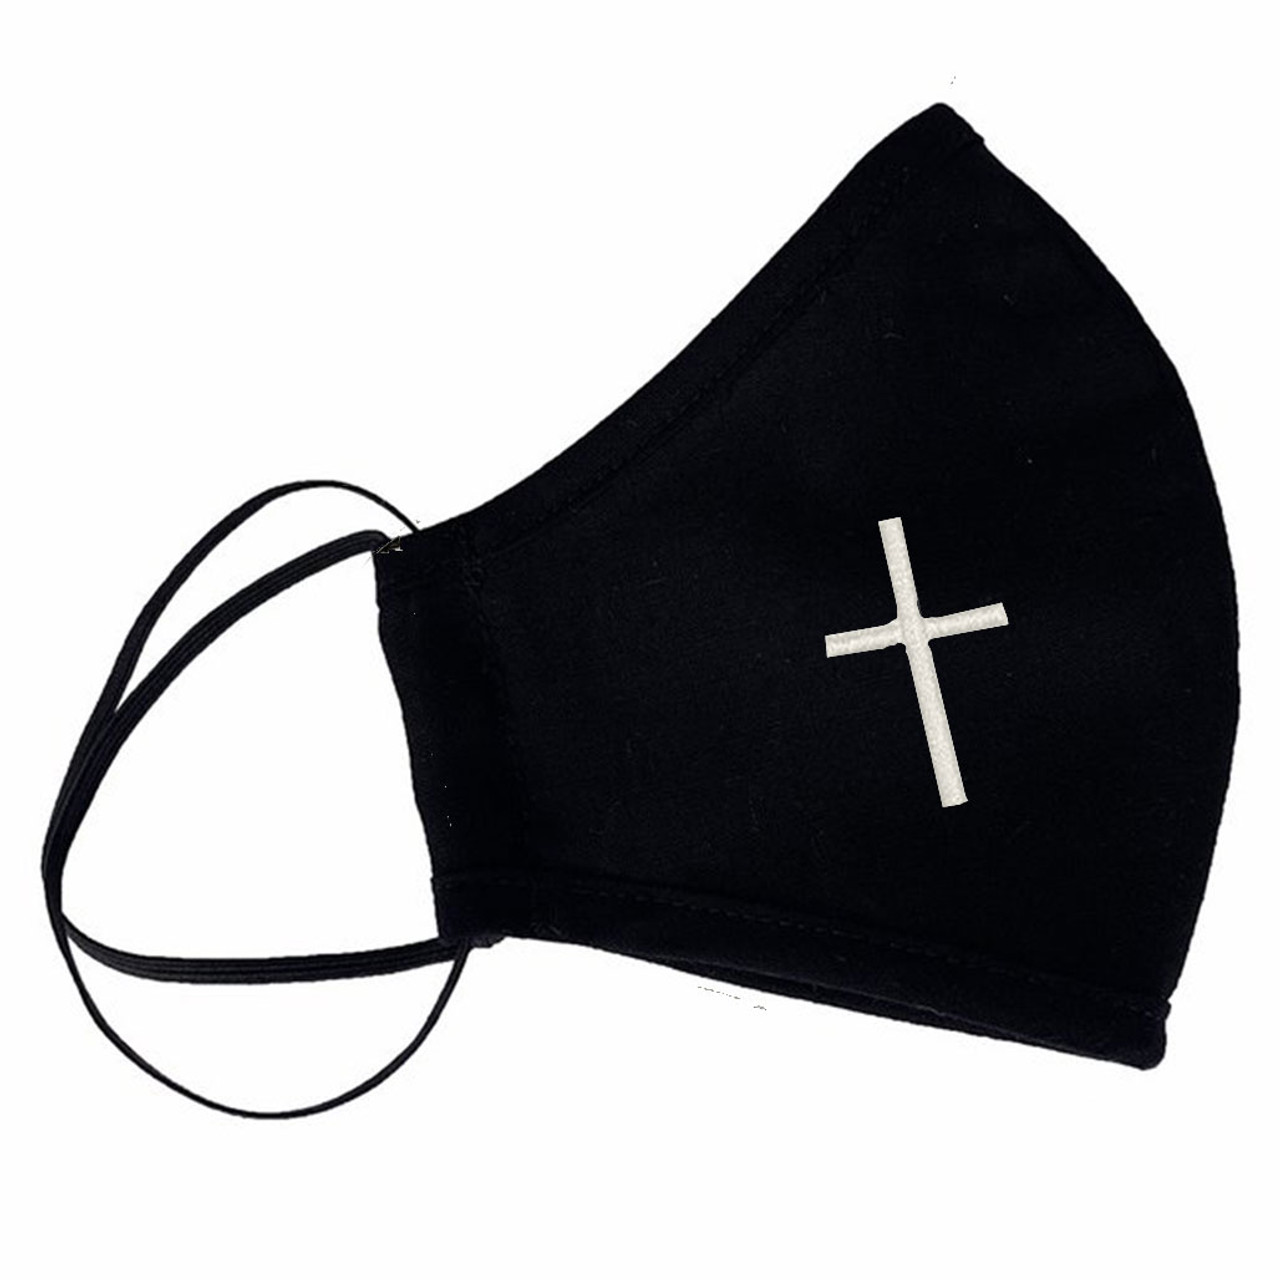 Black Religious Face Mask with Cross for Coronavirus